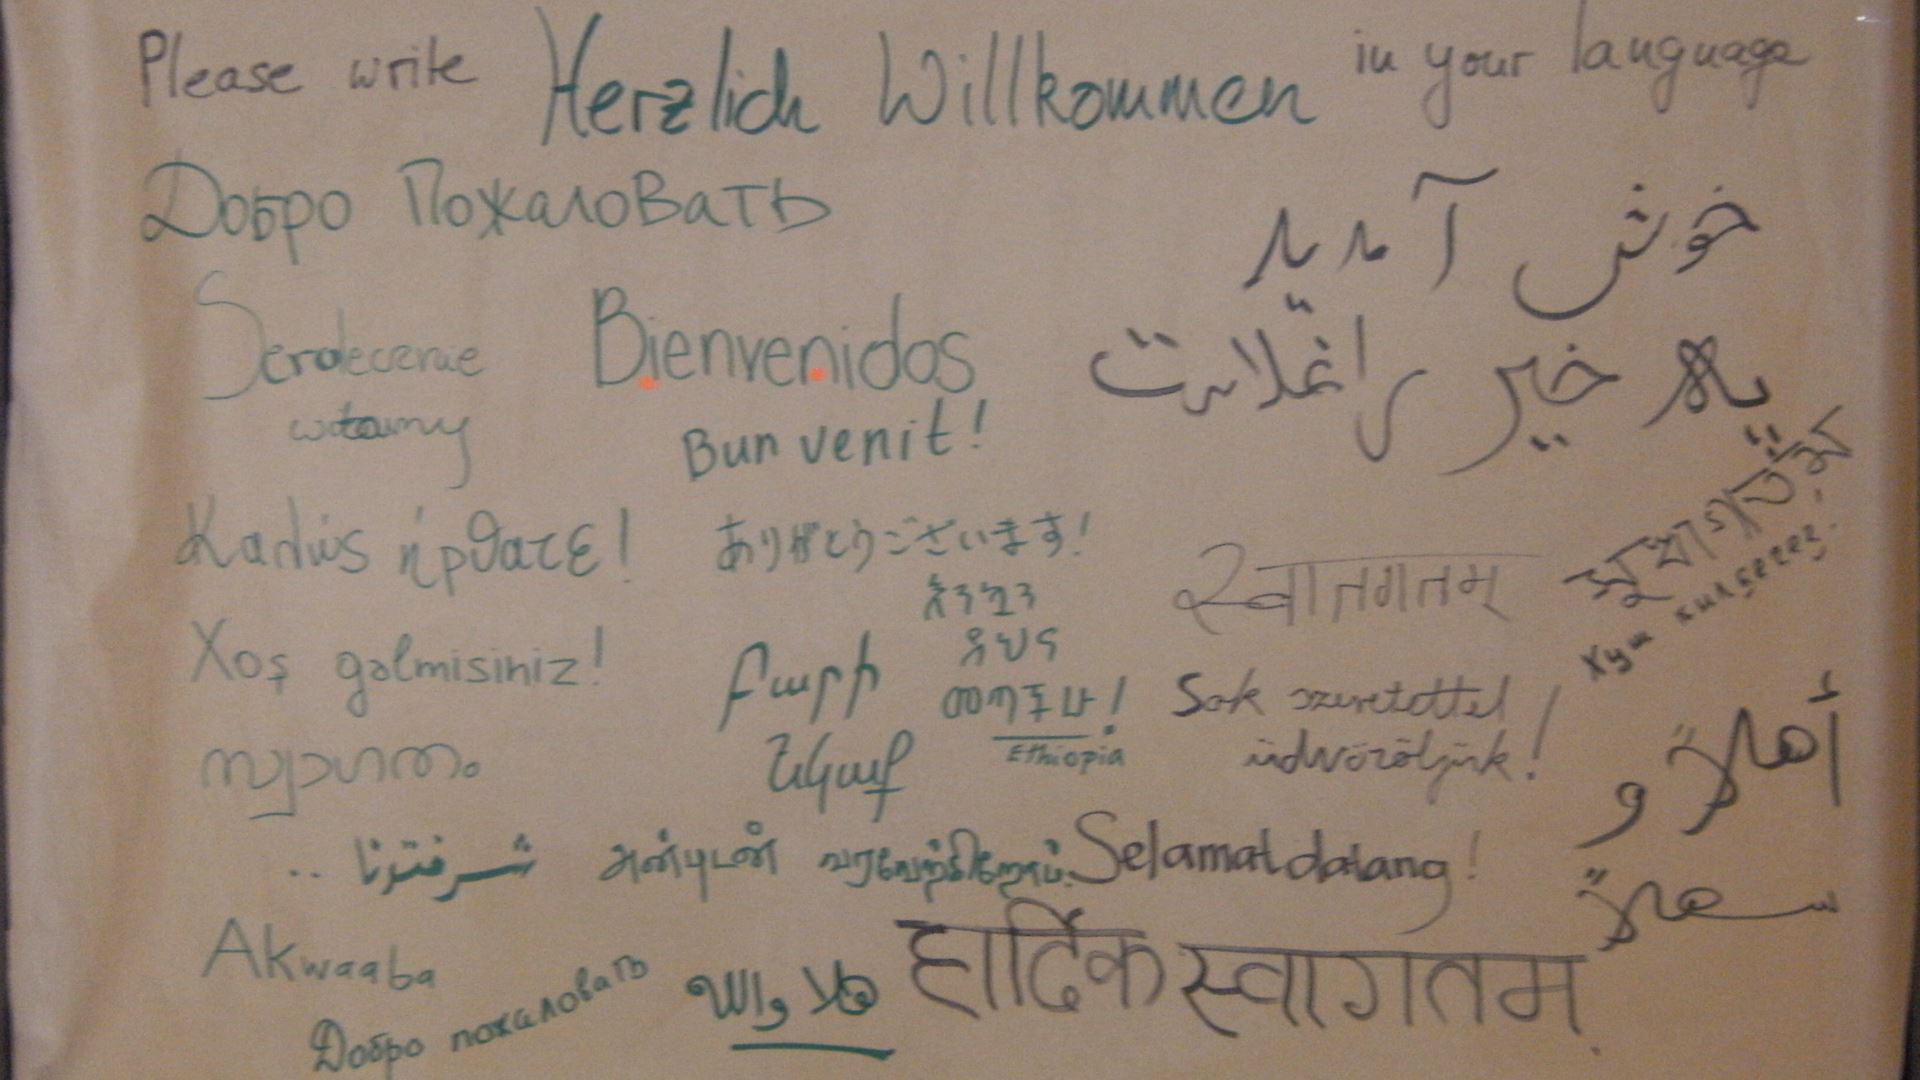 Plakat mit Herzlich Willkommen in vielen Sprachen